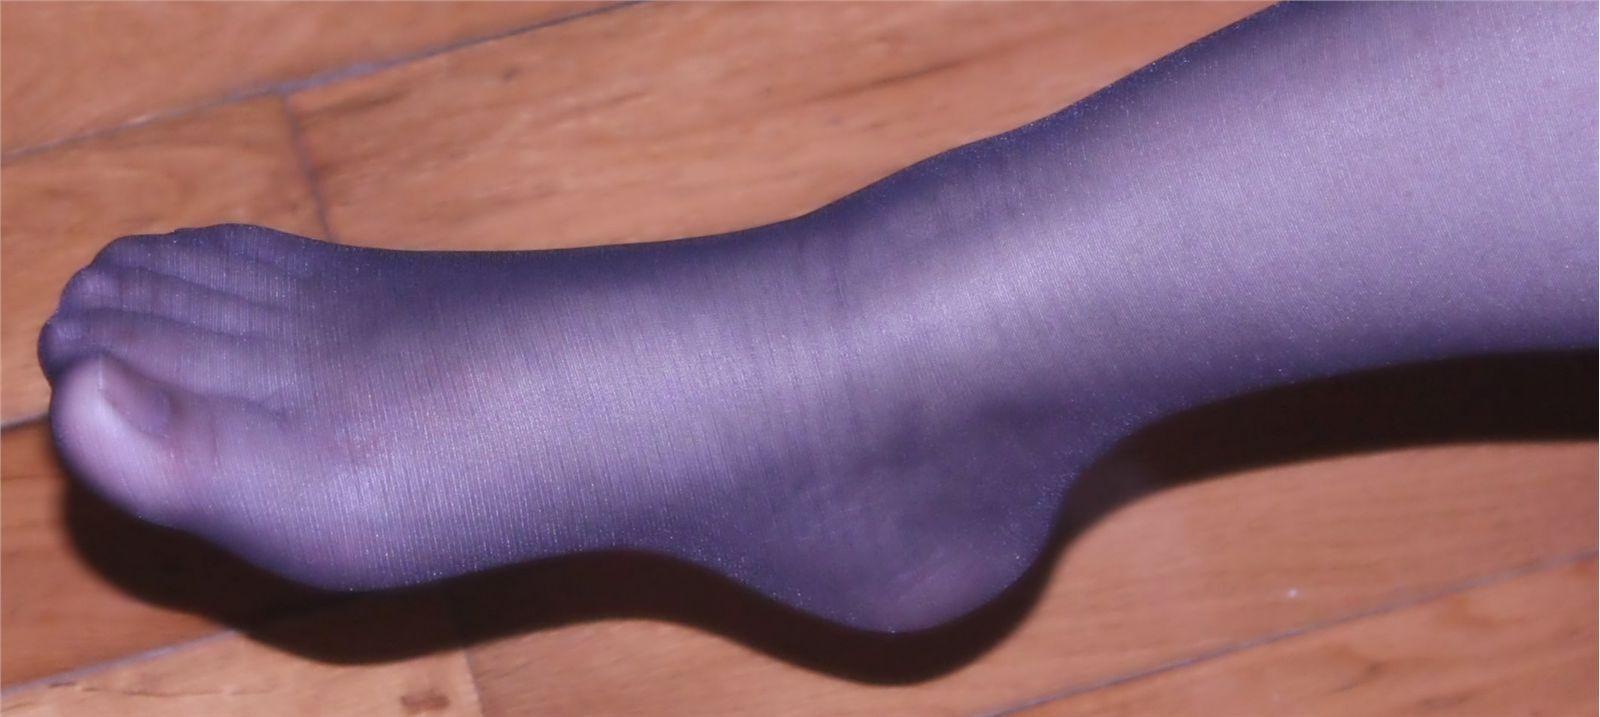 [网络收集] 2013.10.22 老婆穿超薄黑丝袜给我当脚模